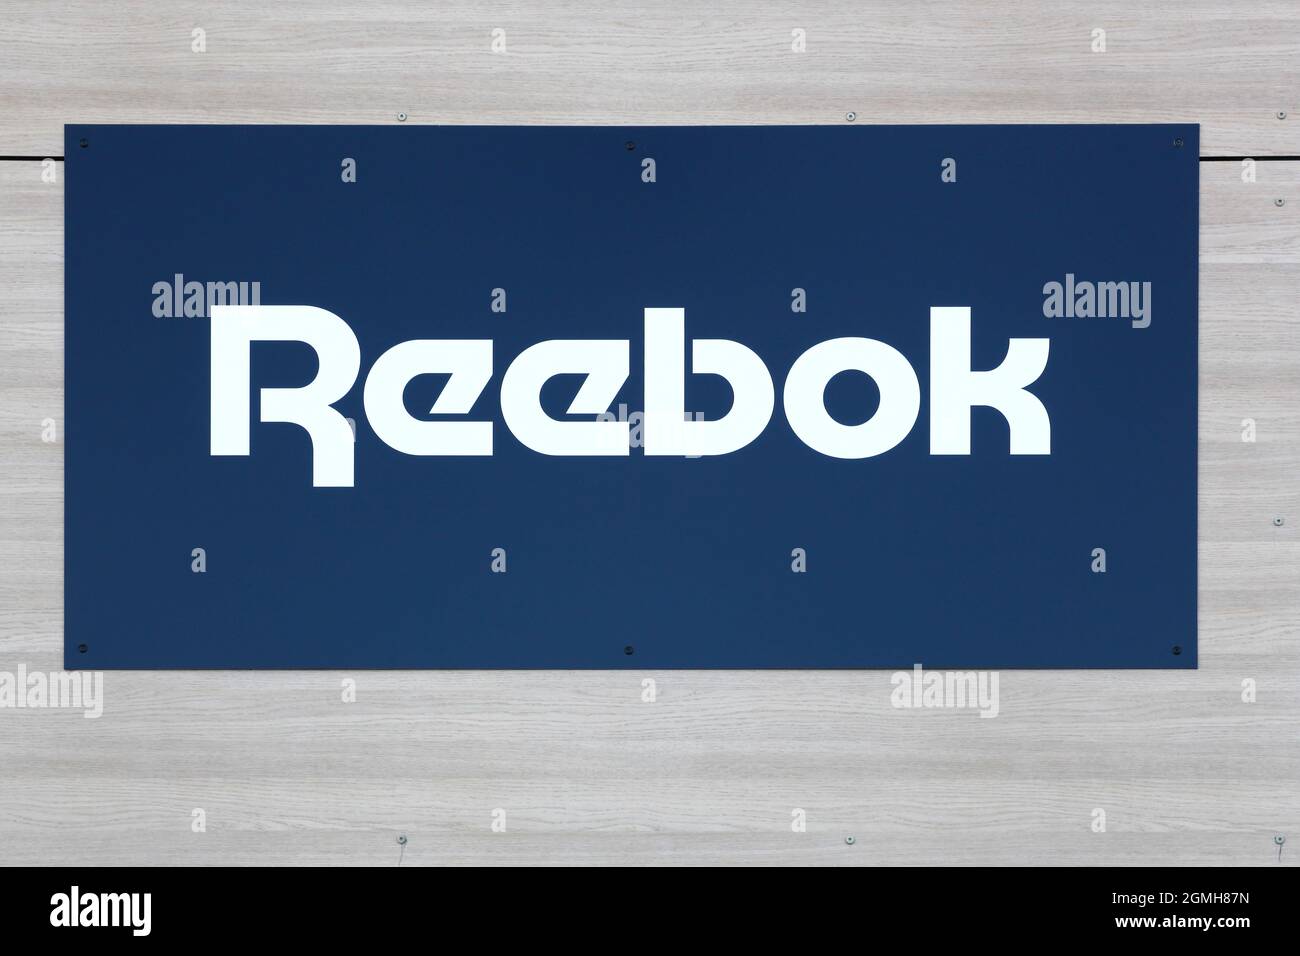 Villefranche, Frankreich - 17. Mai 2020: Reebok-Logo an der Wand. Reebok ist ein weltweit tätiges Unternehmen für sportliche Schuhe und Bekleidung Stockfoto